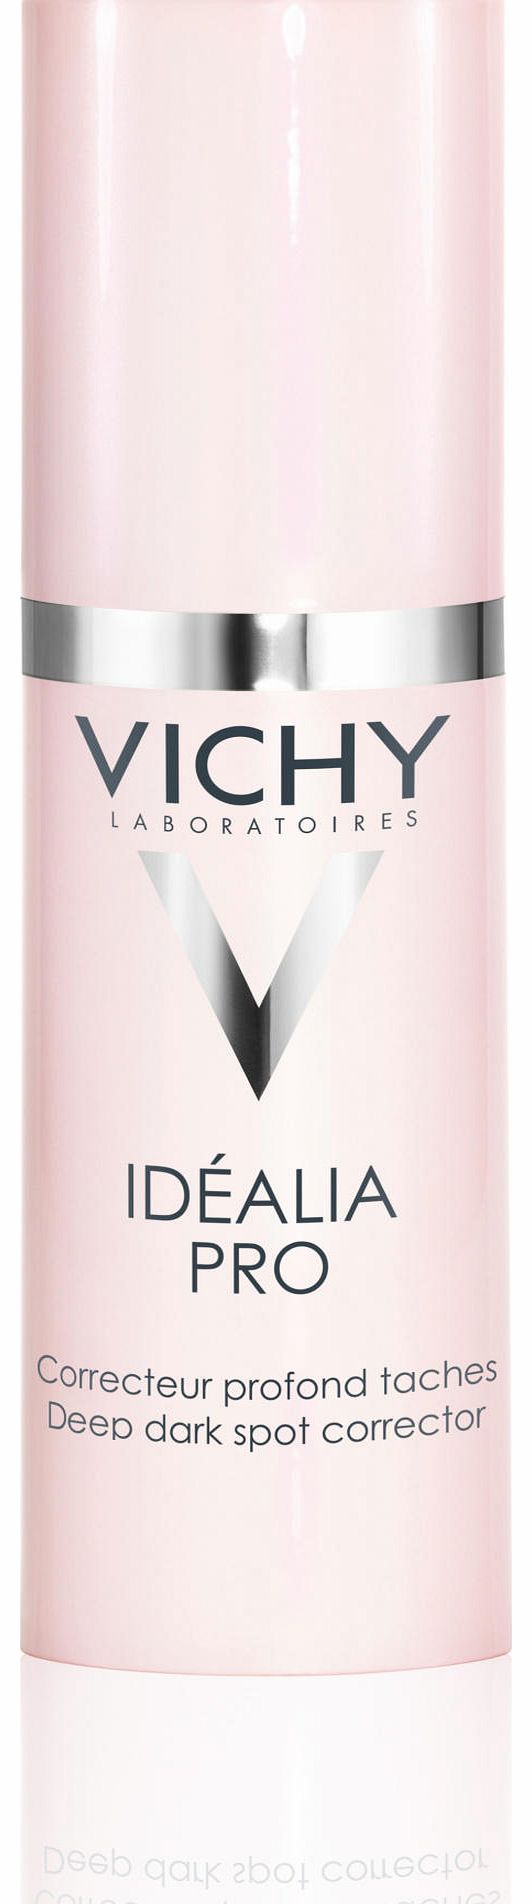 Vichy Idealia Pro Skin Perfector